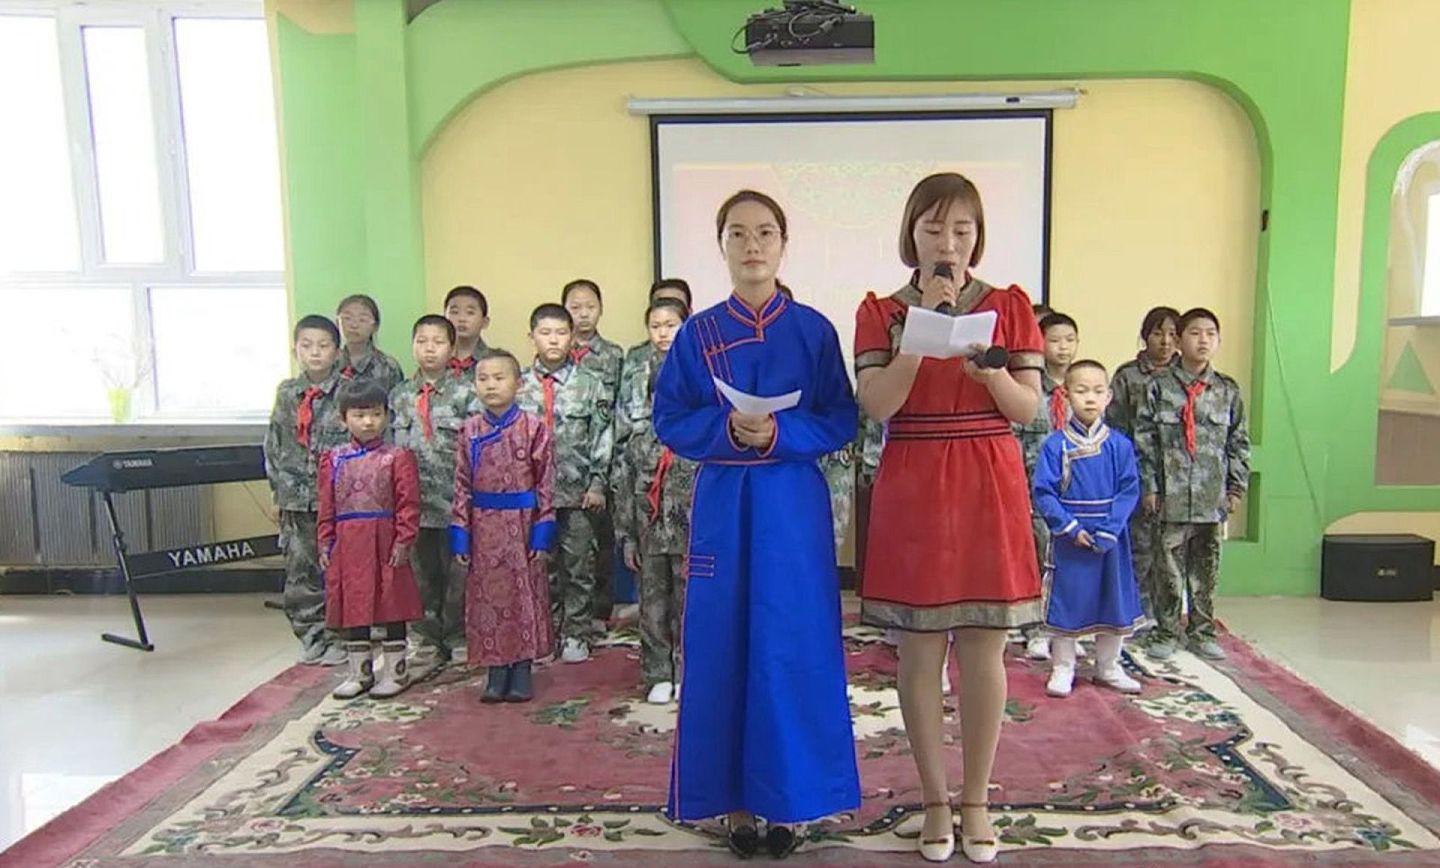 内蒙古民族语言授课学校最近将强化汉语授课的消息，在当地引起反响，不少蒙古族家长和学生举行示威抗议，有的拒绝送小孩入学。 （微博@呼伦贝尔额尔古纳）